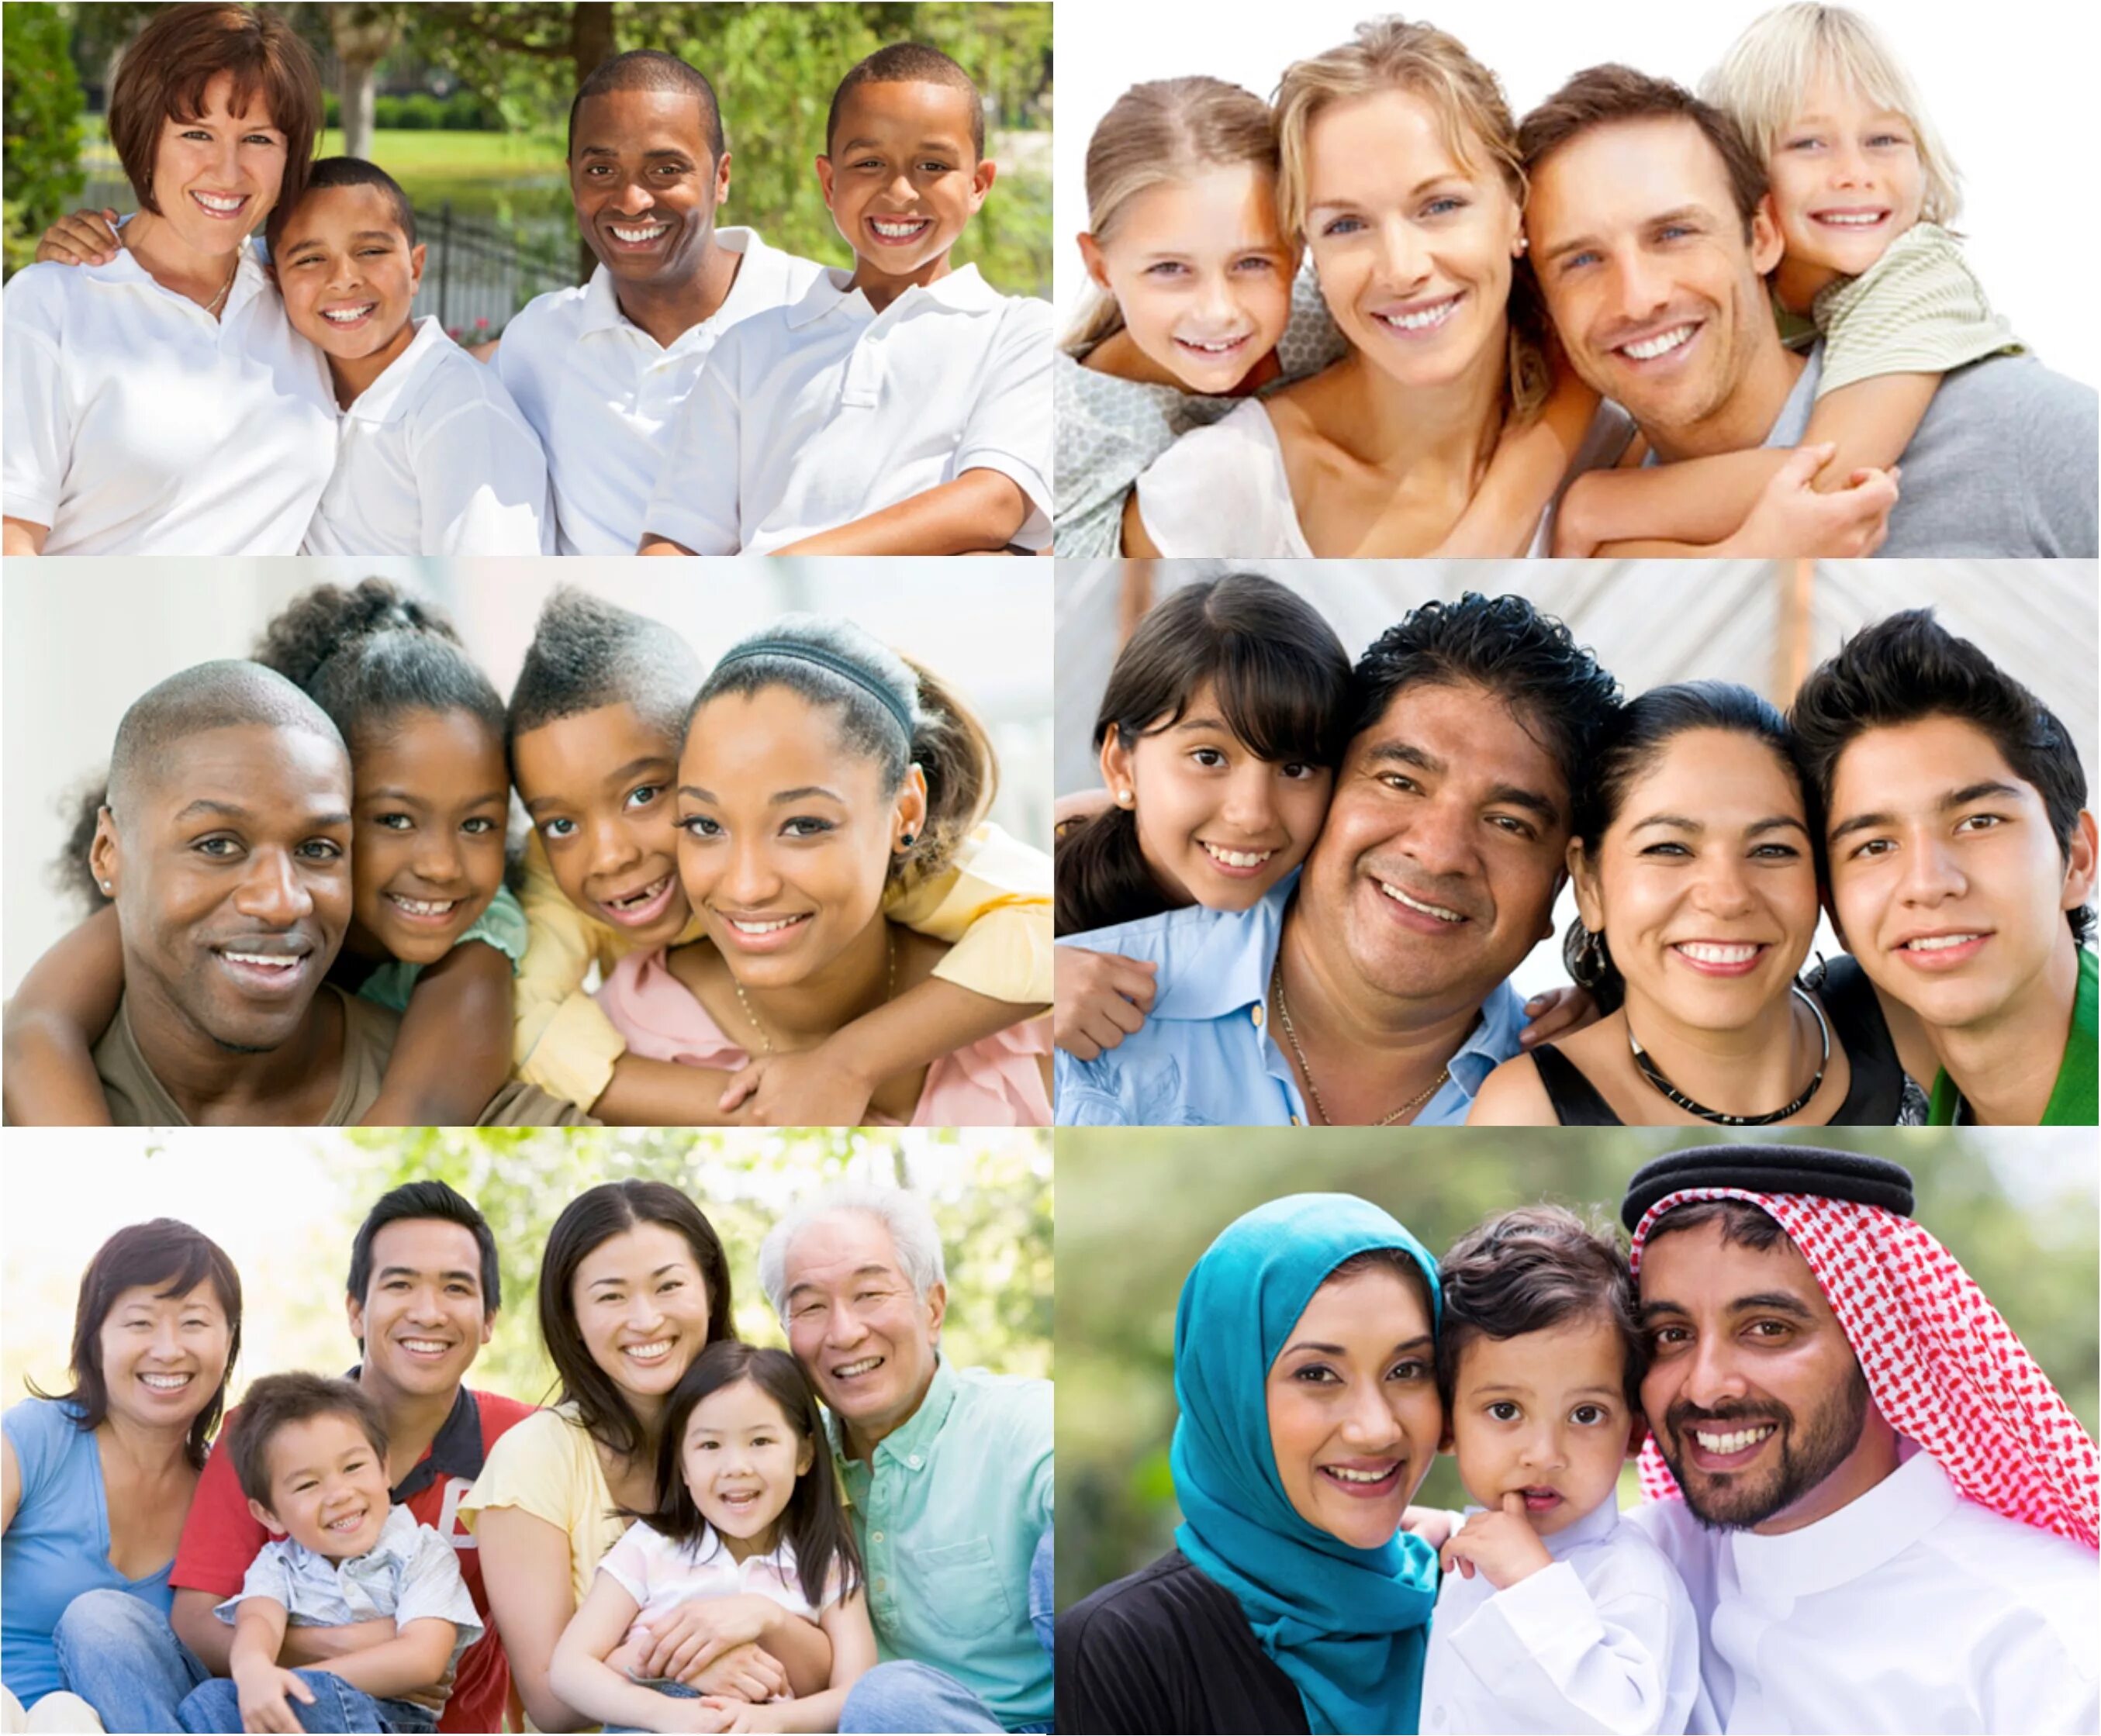 Different races. Страны люди. Этническисмешанные семьи. Люди разных стран. Портрет группы людей.